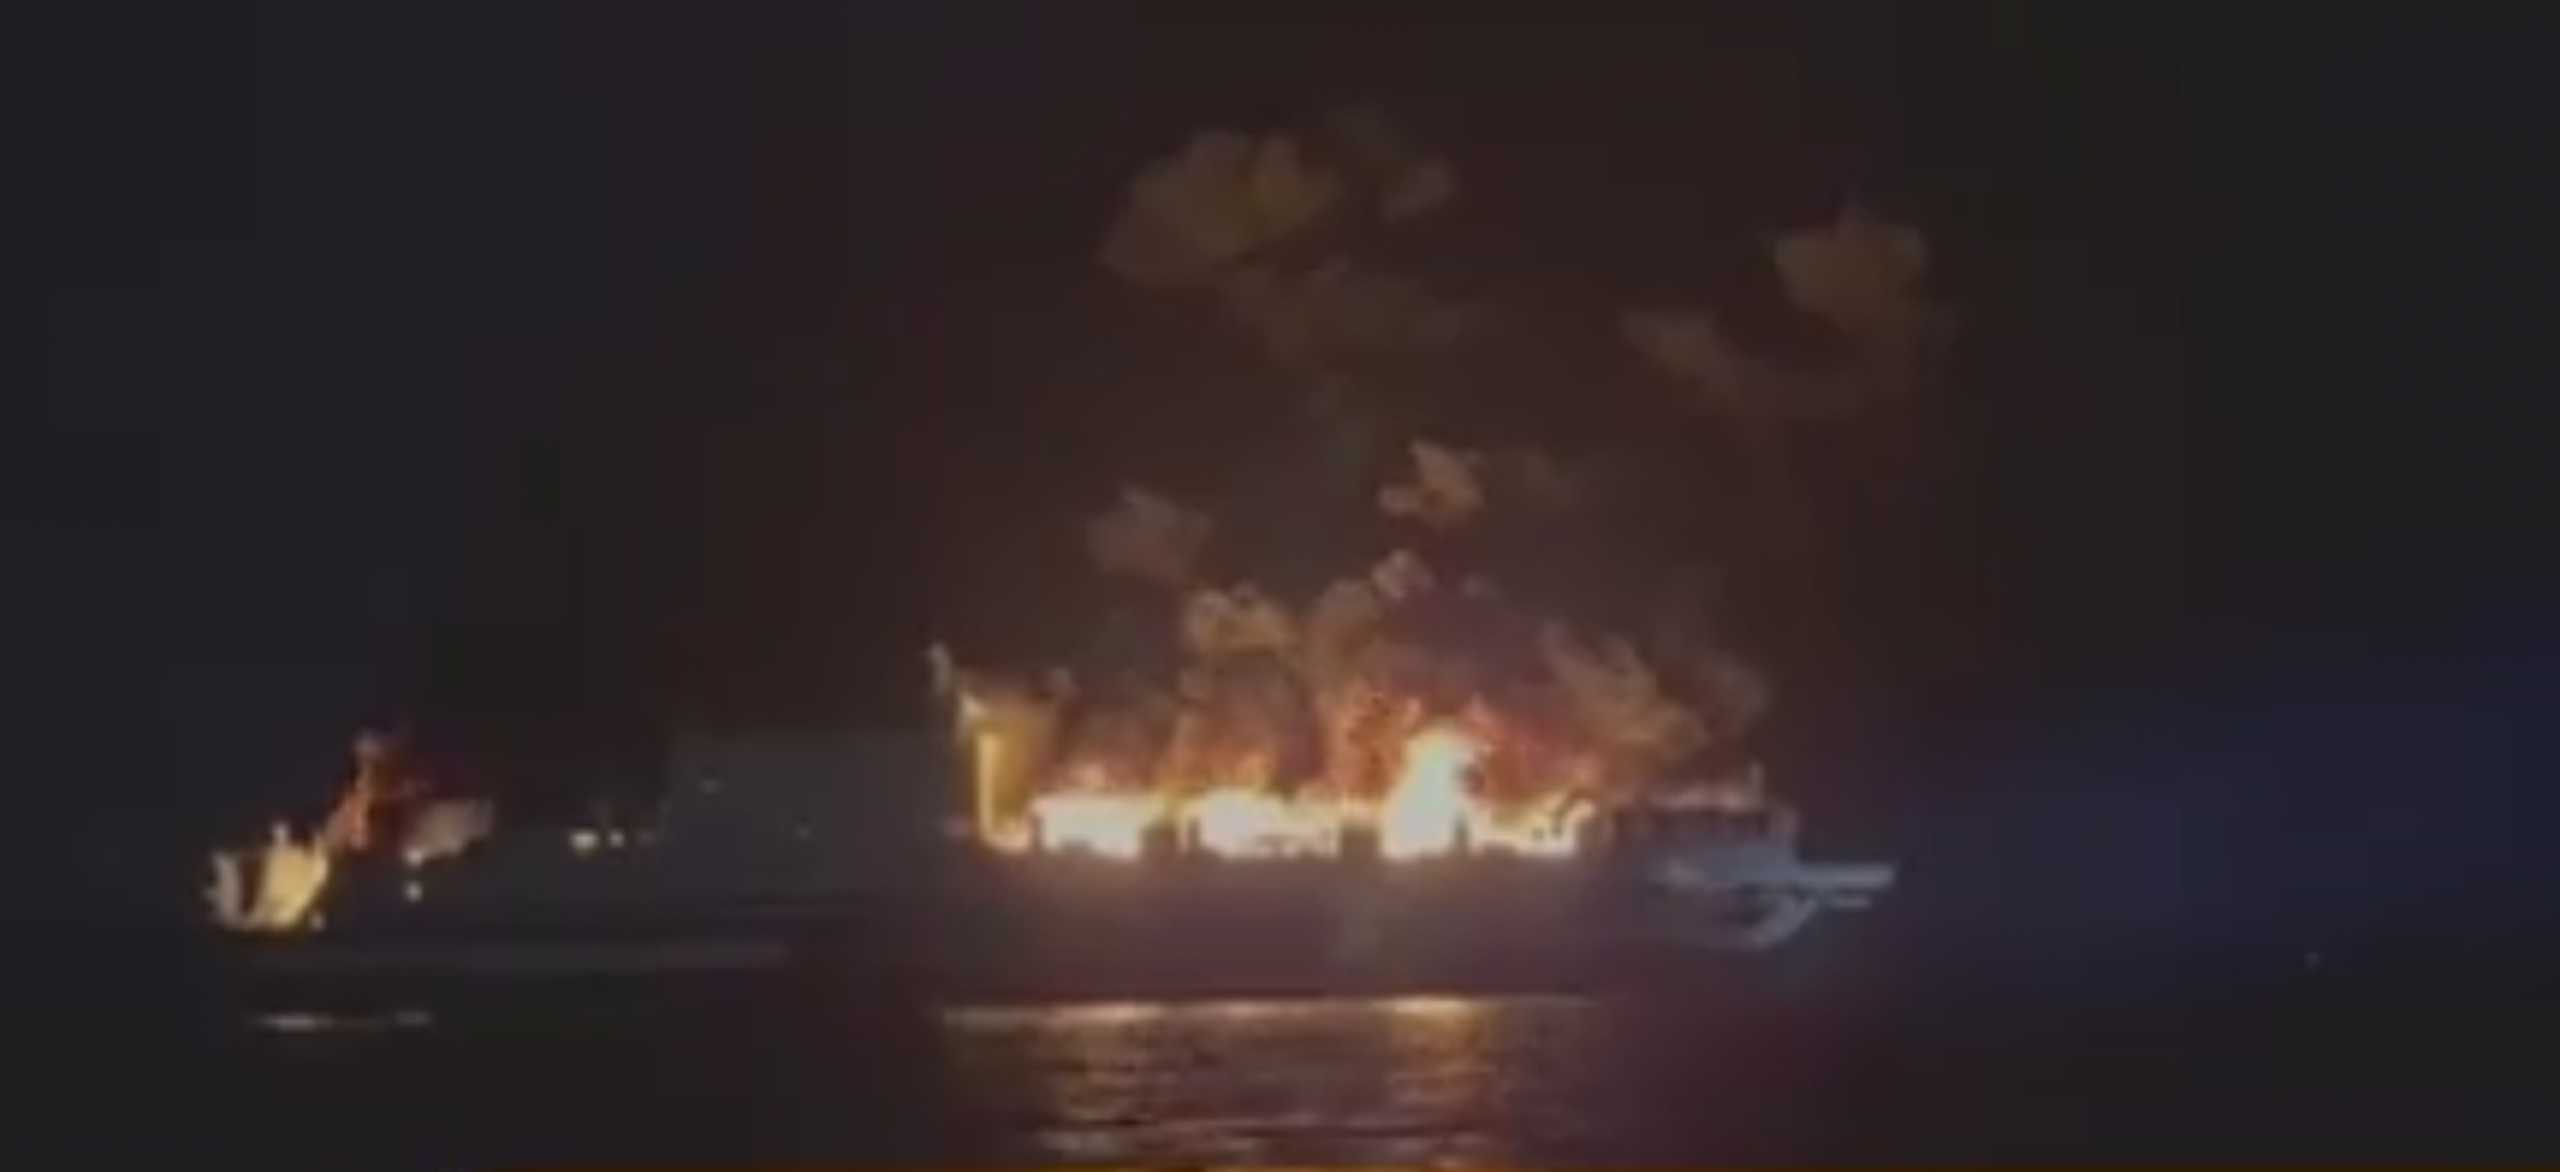 Κέρκυρα πλοίο φωτιά: Η συγκλονιστική μαρτυρία επιβάτη | Ειδησεις | Pagenews .gr